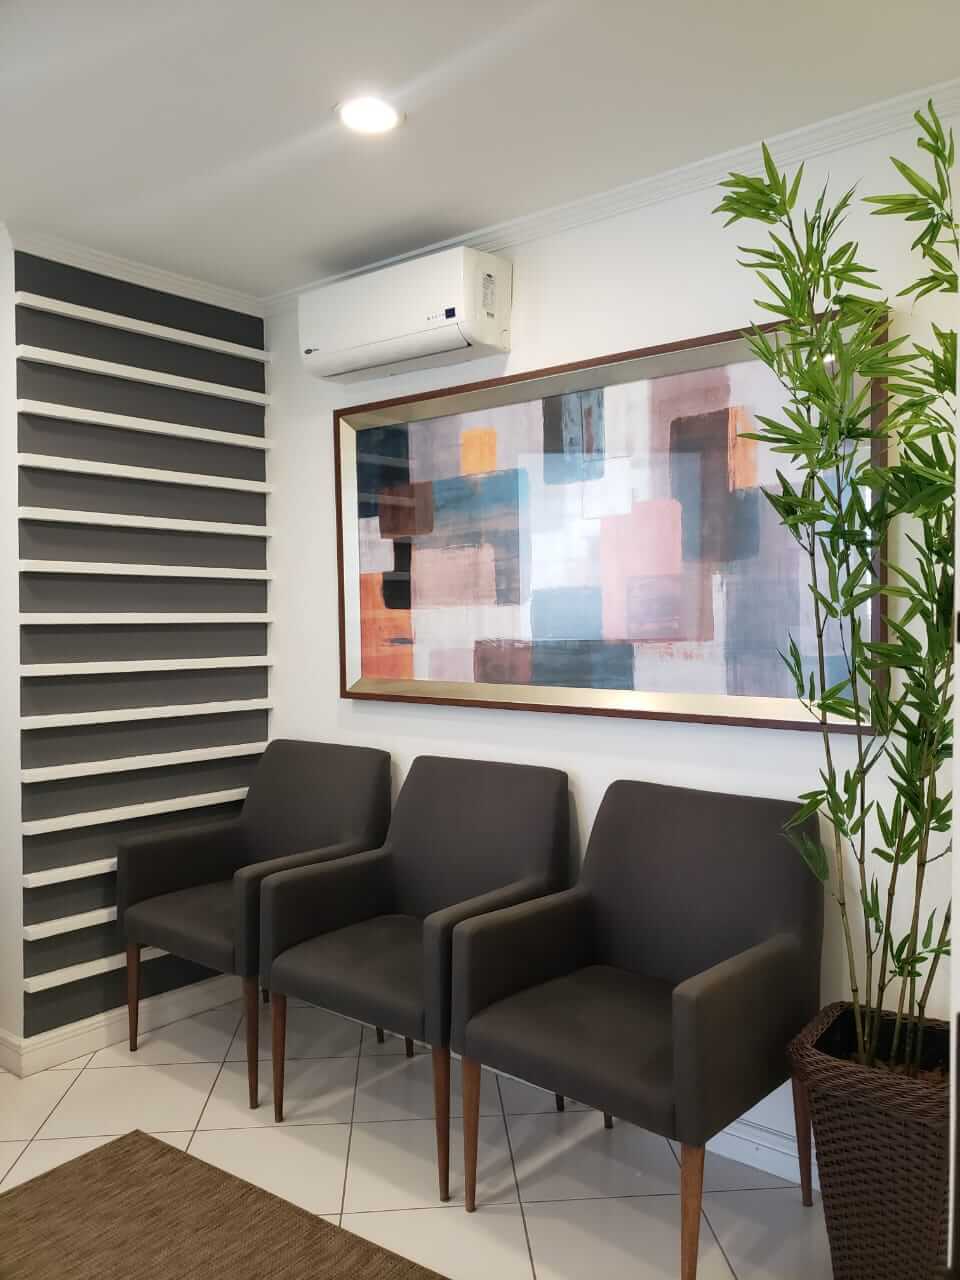 Sala de espera do Consultório de Paula Machado - Odontologia SP